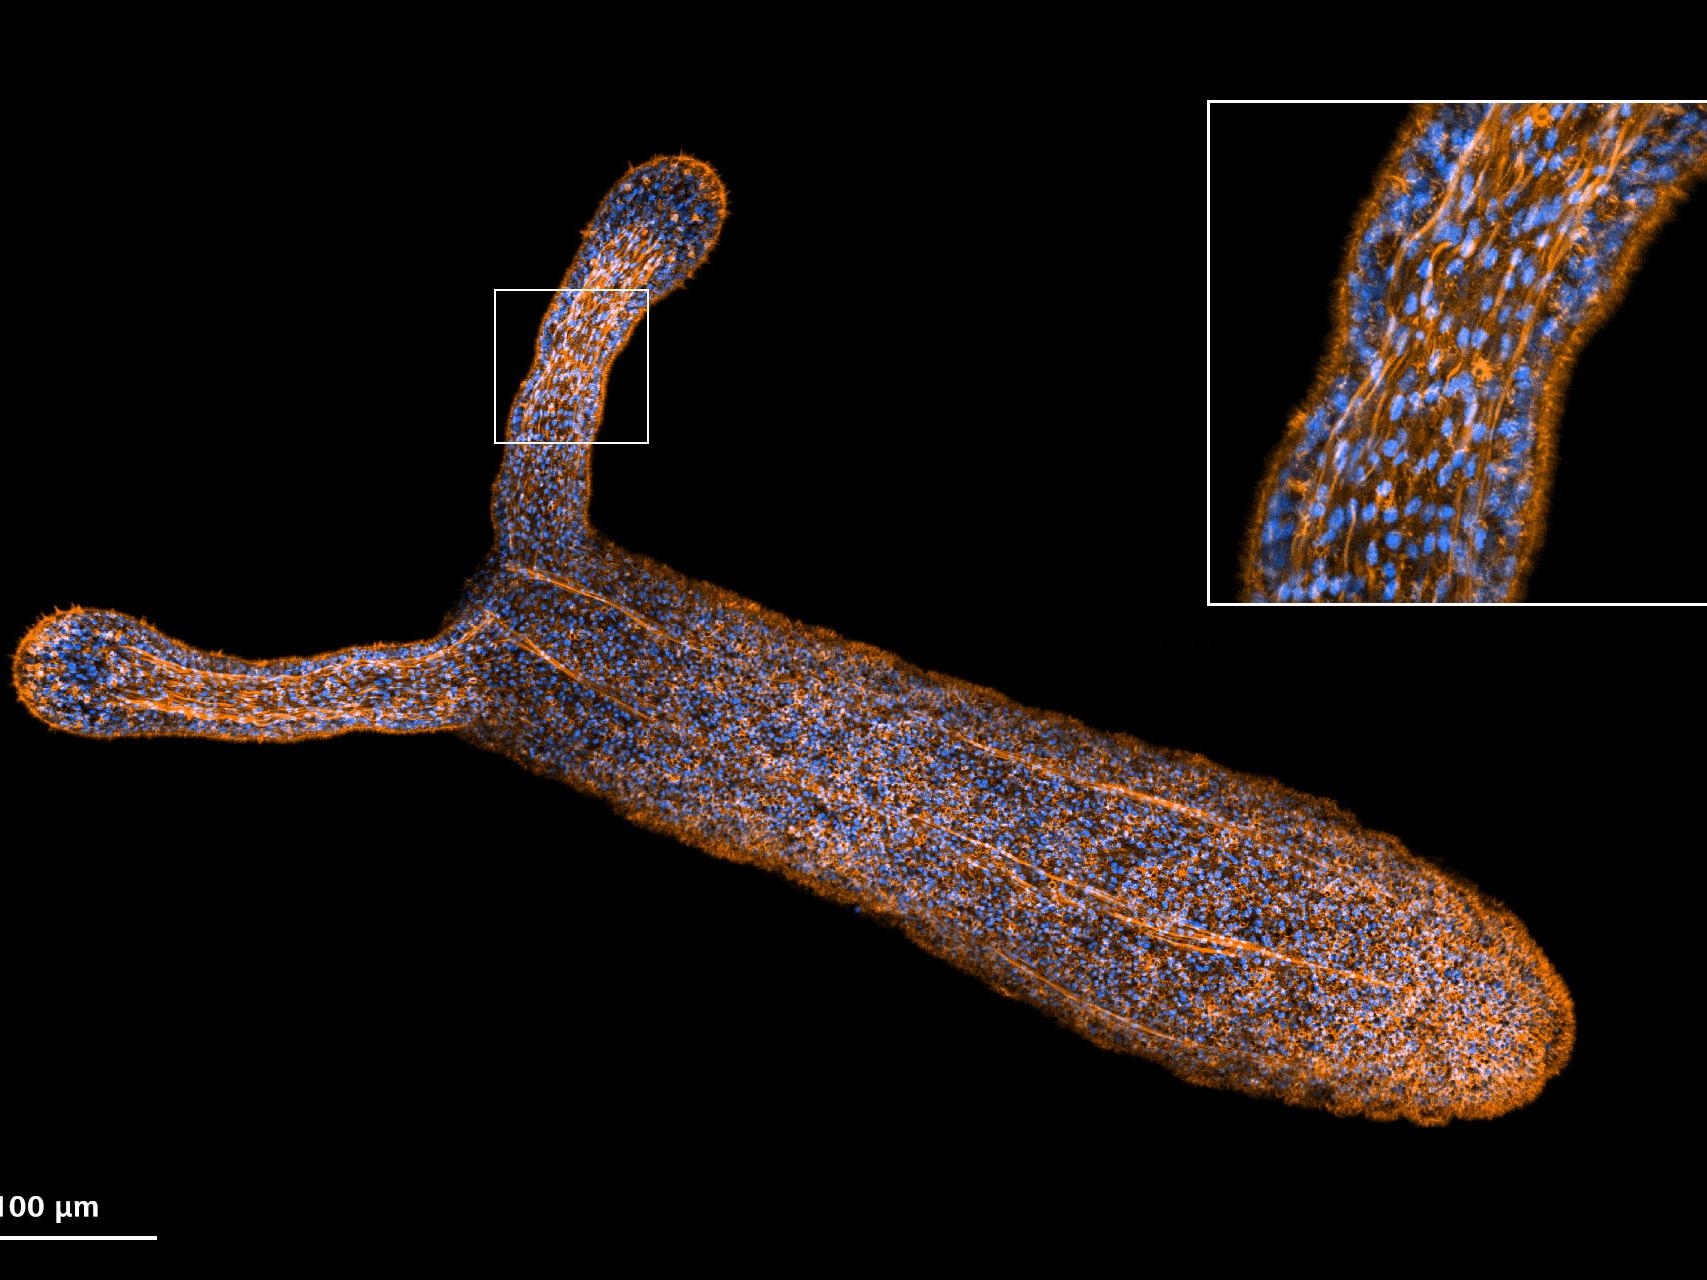 Image d'une anémone de mer (Nematostella vectensis) capturée avec Airyscan 2 en mode haute sensibilité.